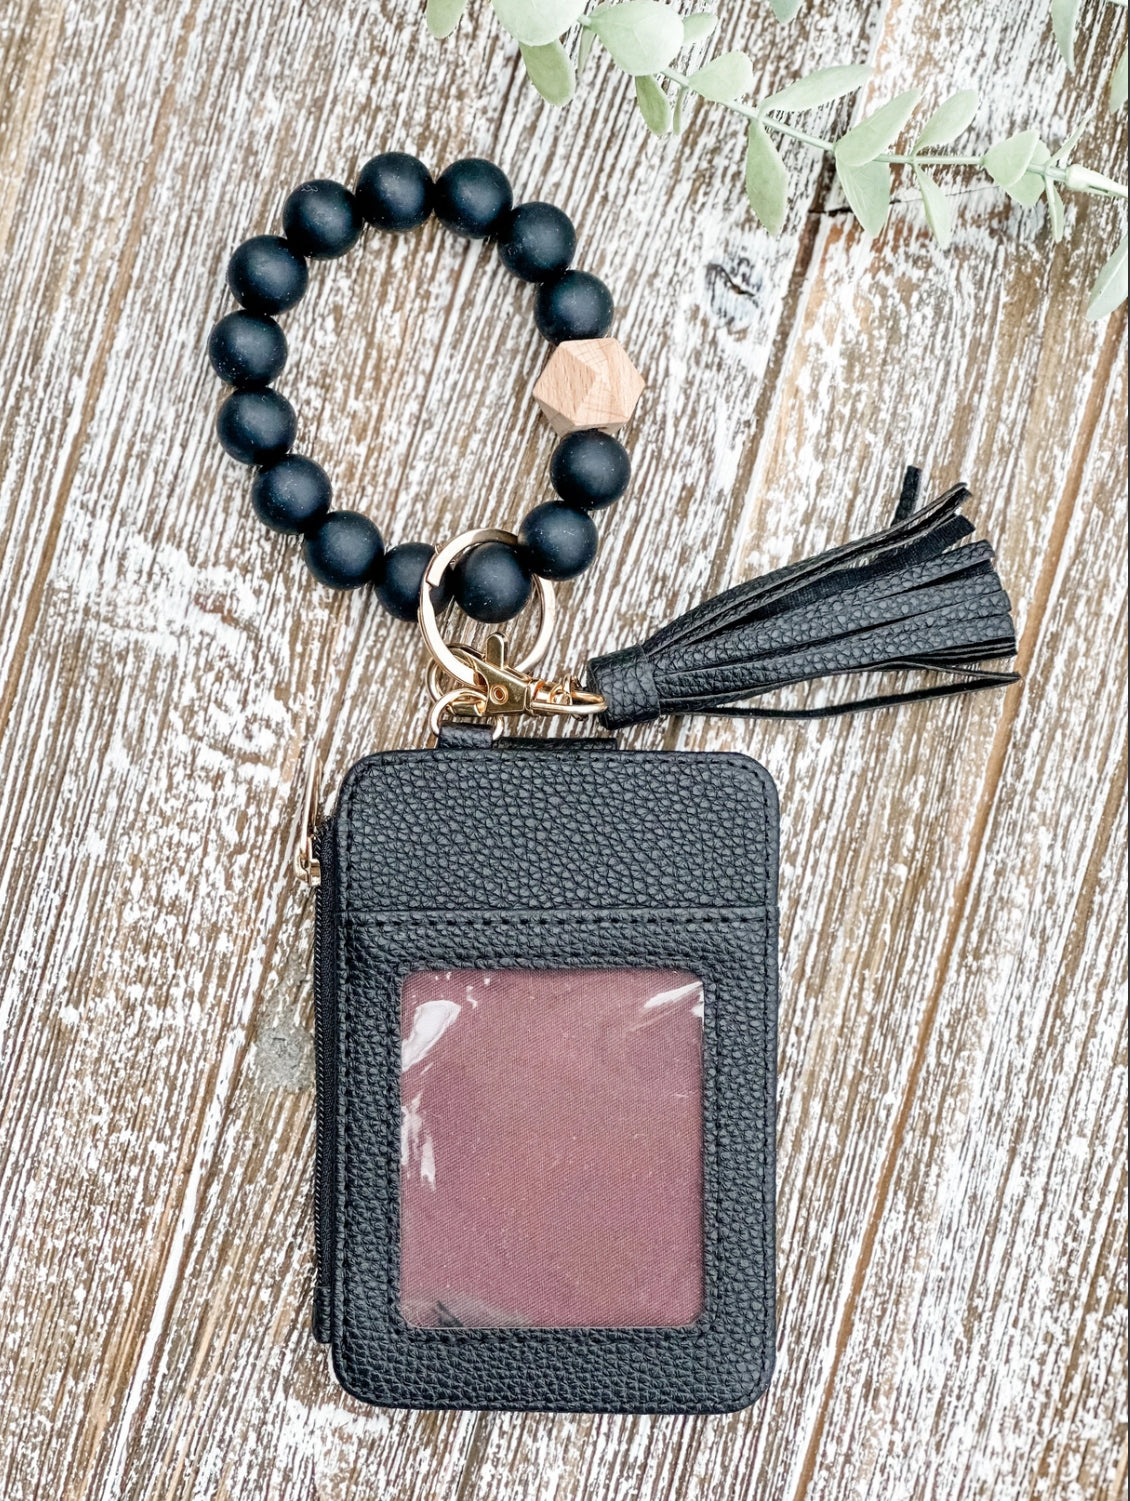 Wristlet Wallet Keychain